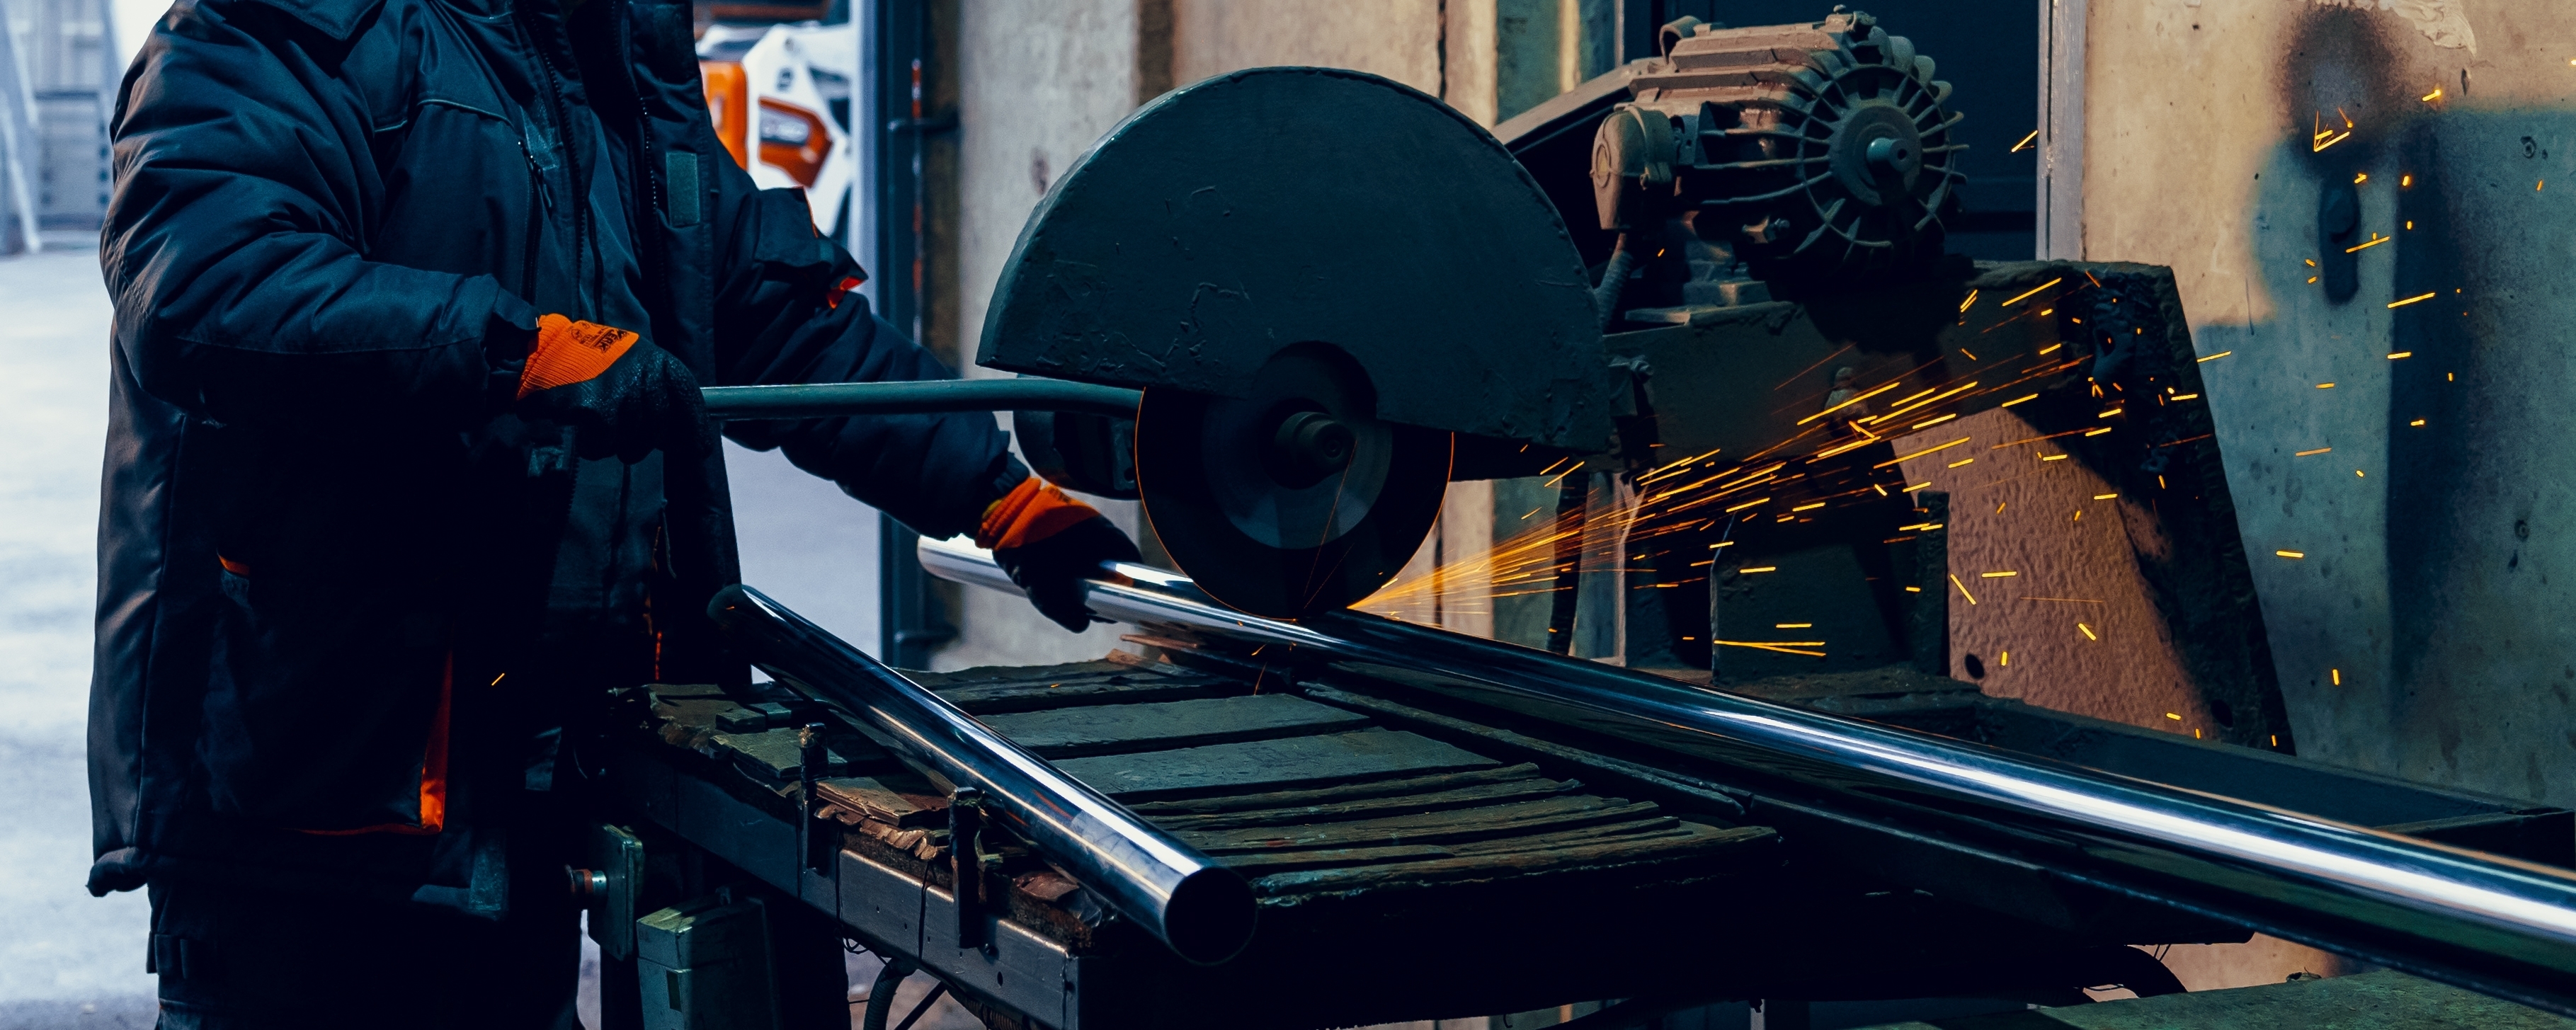 Благодаря современному сварочному оборудованию опыт рязанского завода вошёл в лучшие практики нацпроекта «Производительность труда»